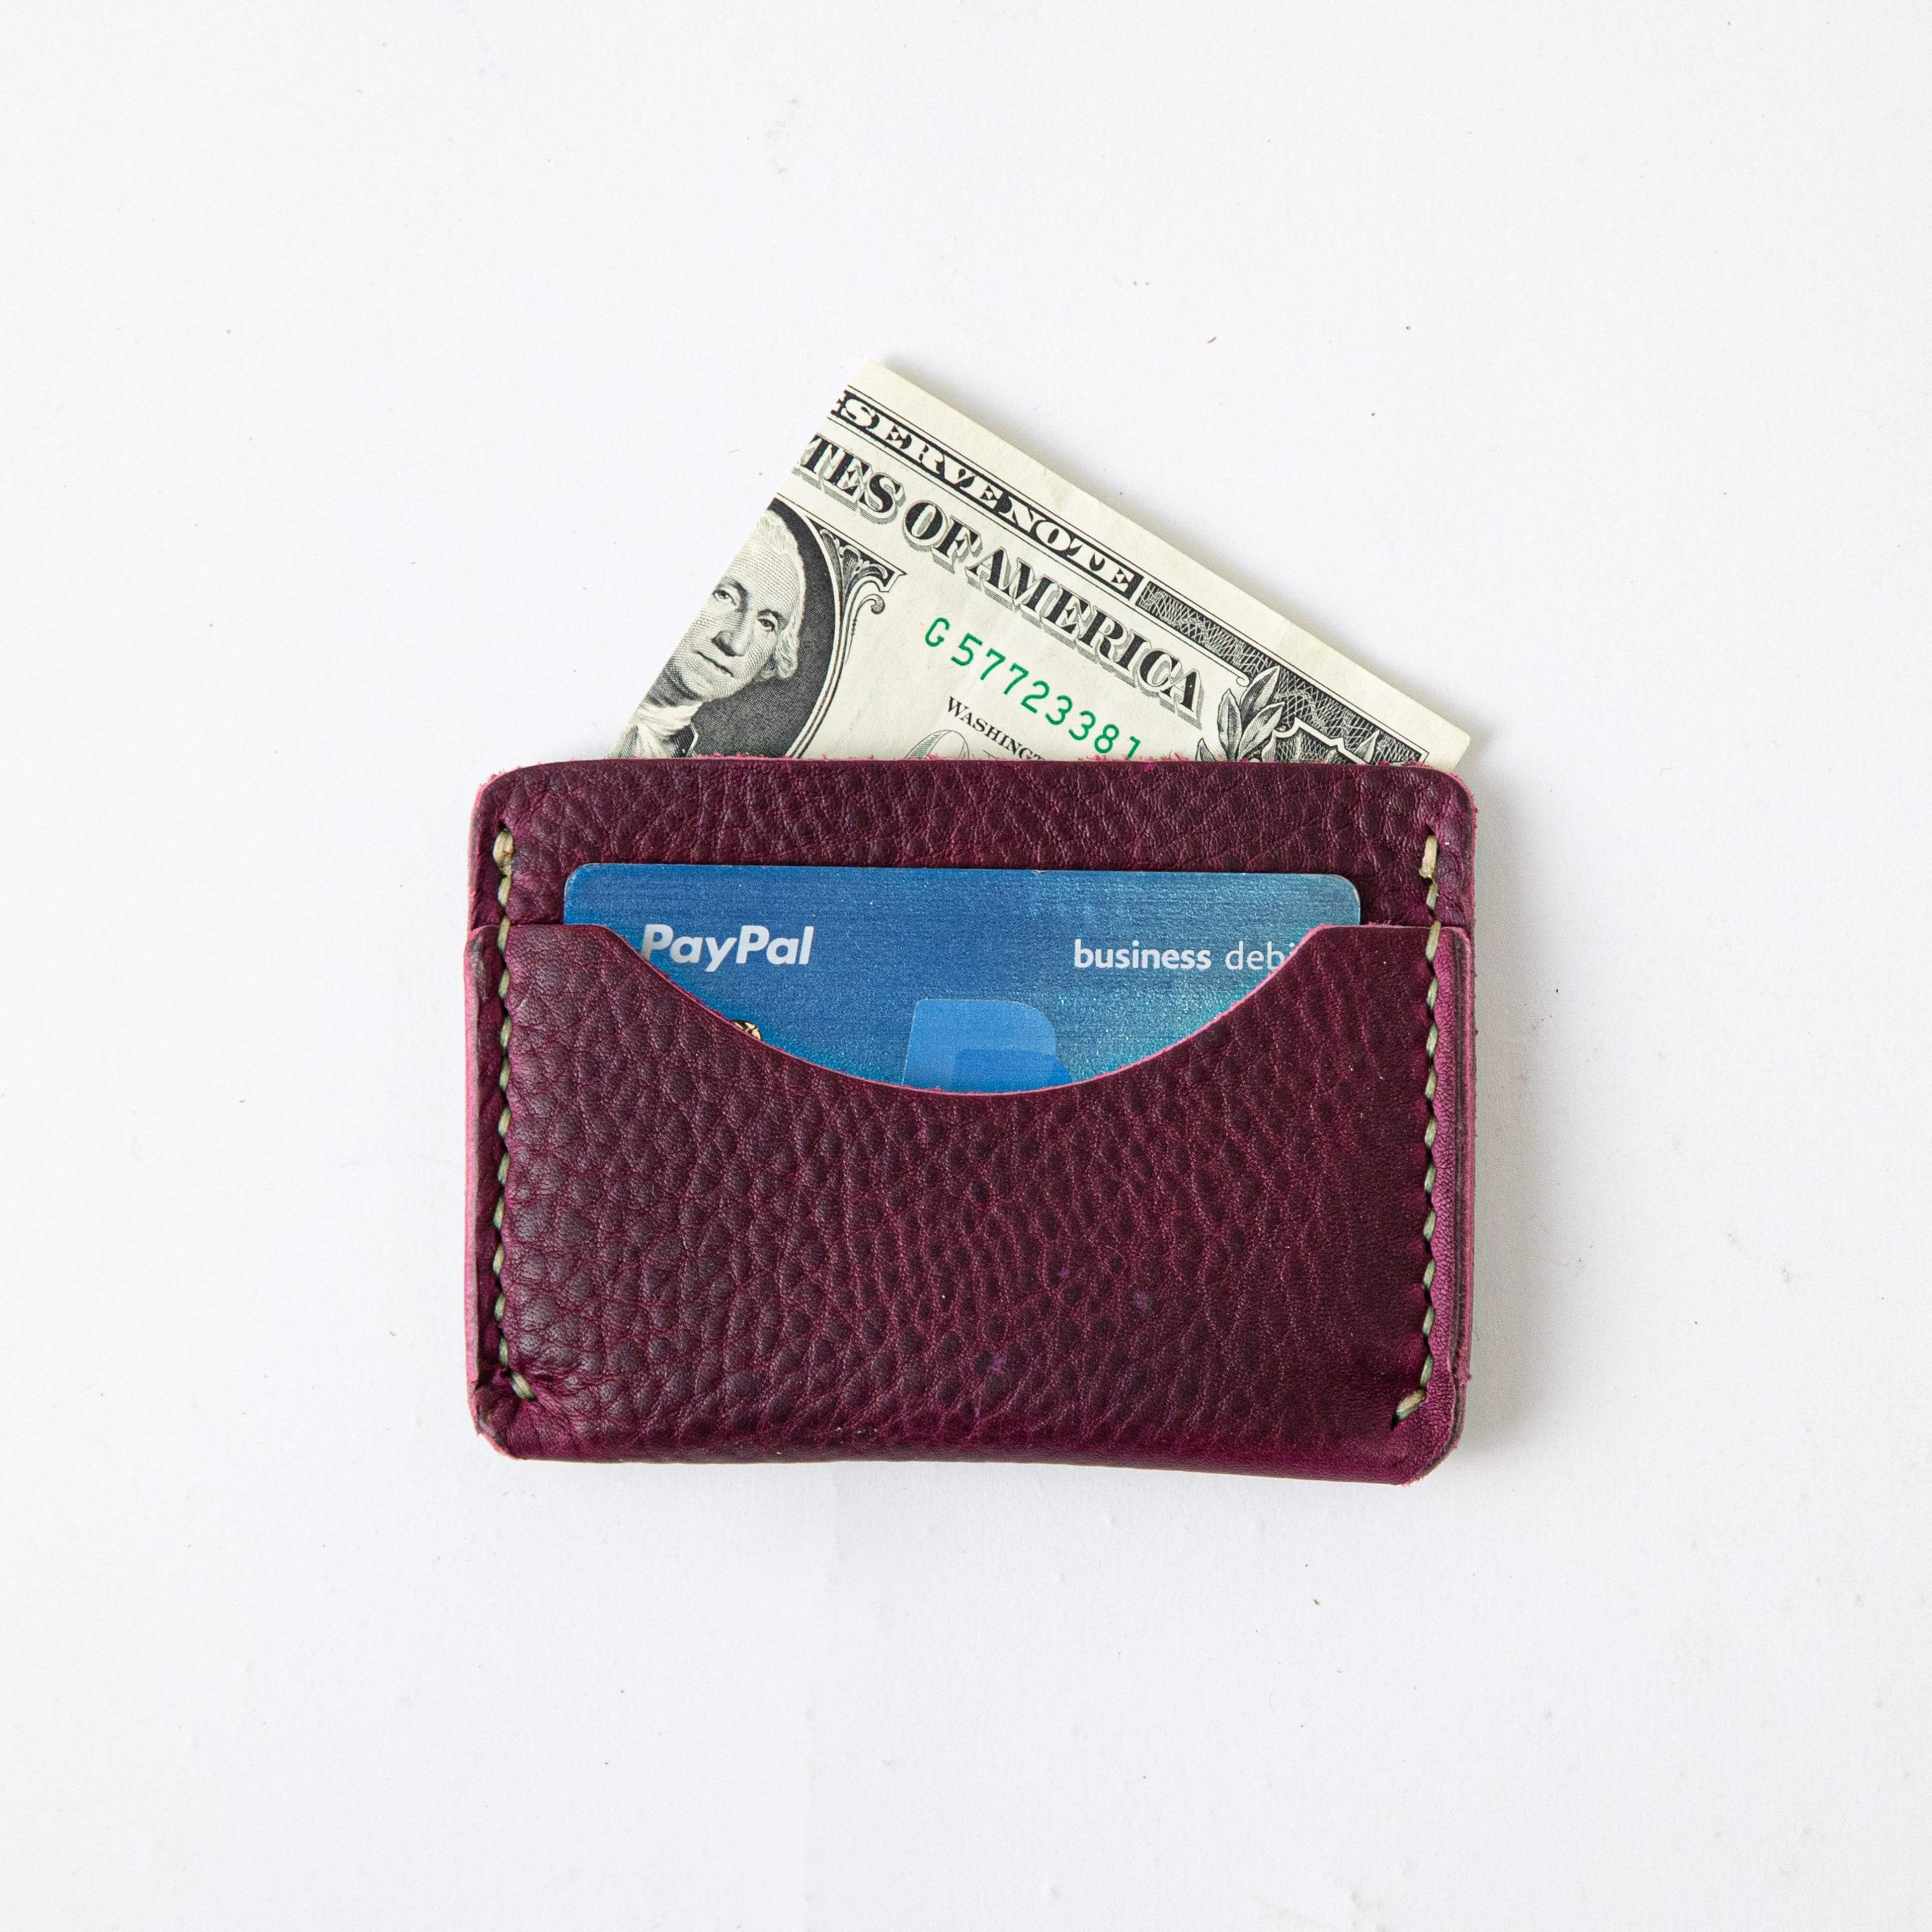 Women's Wallets & Card Holders